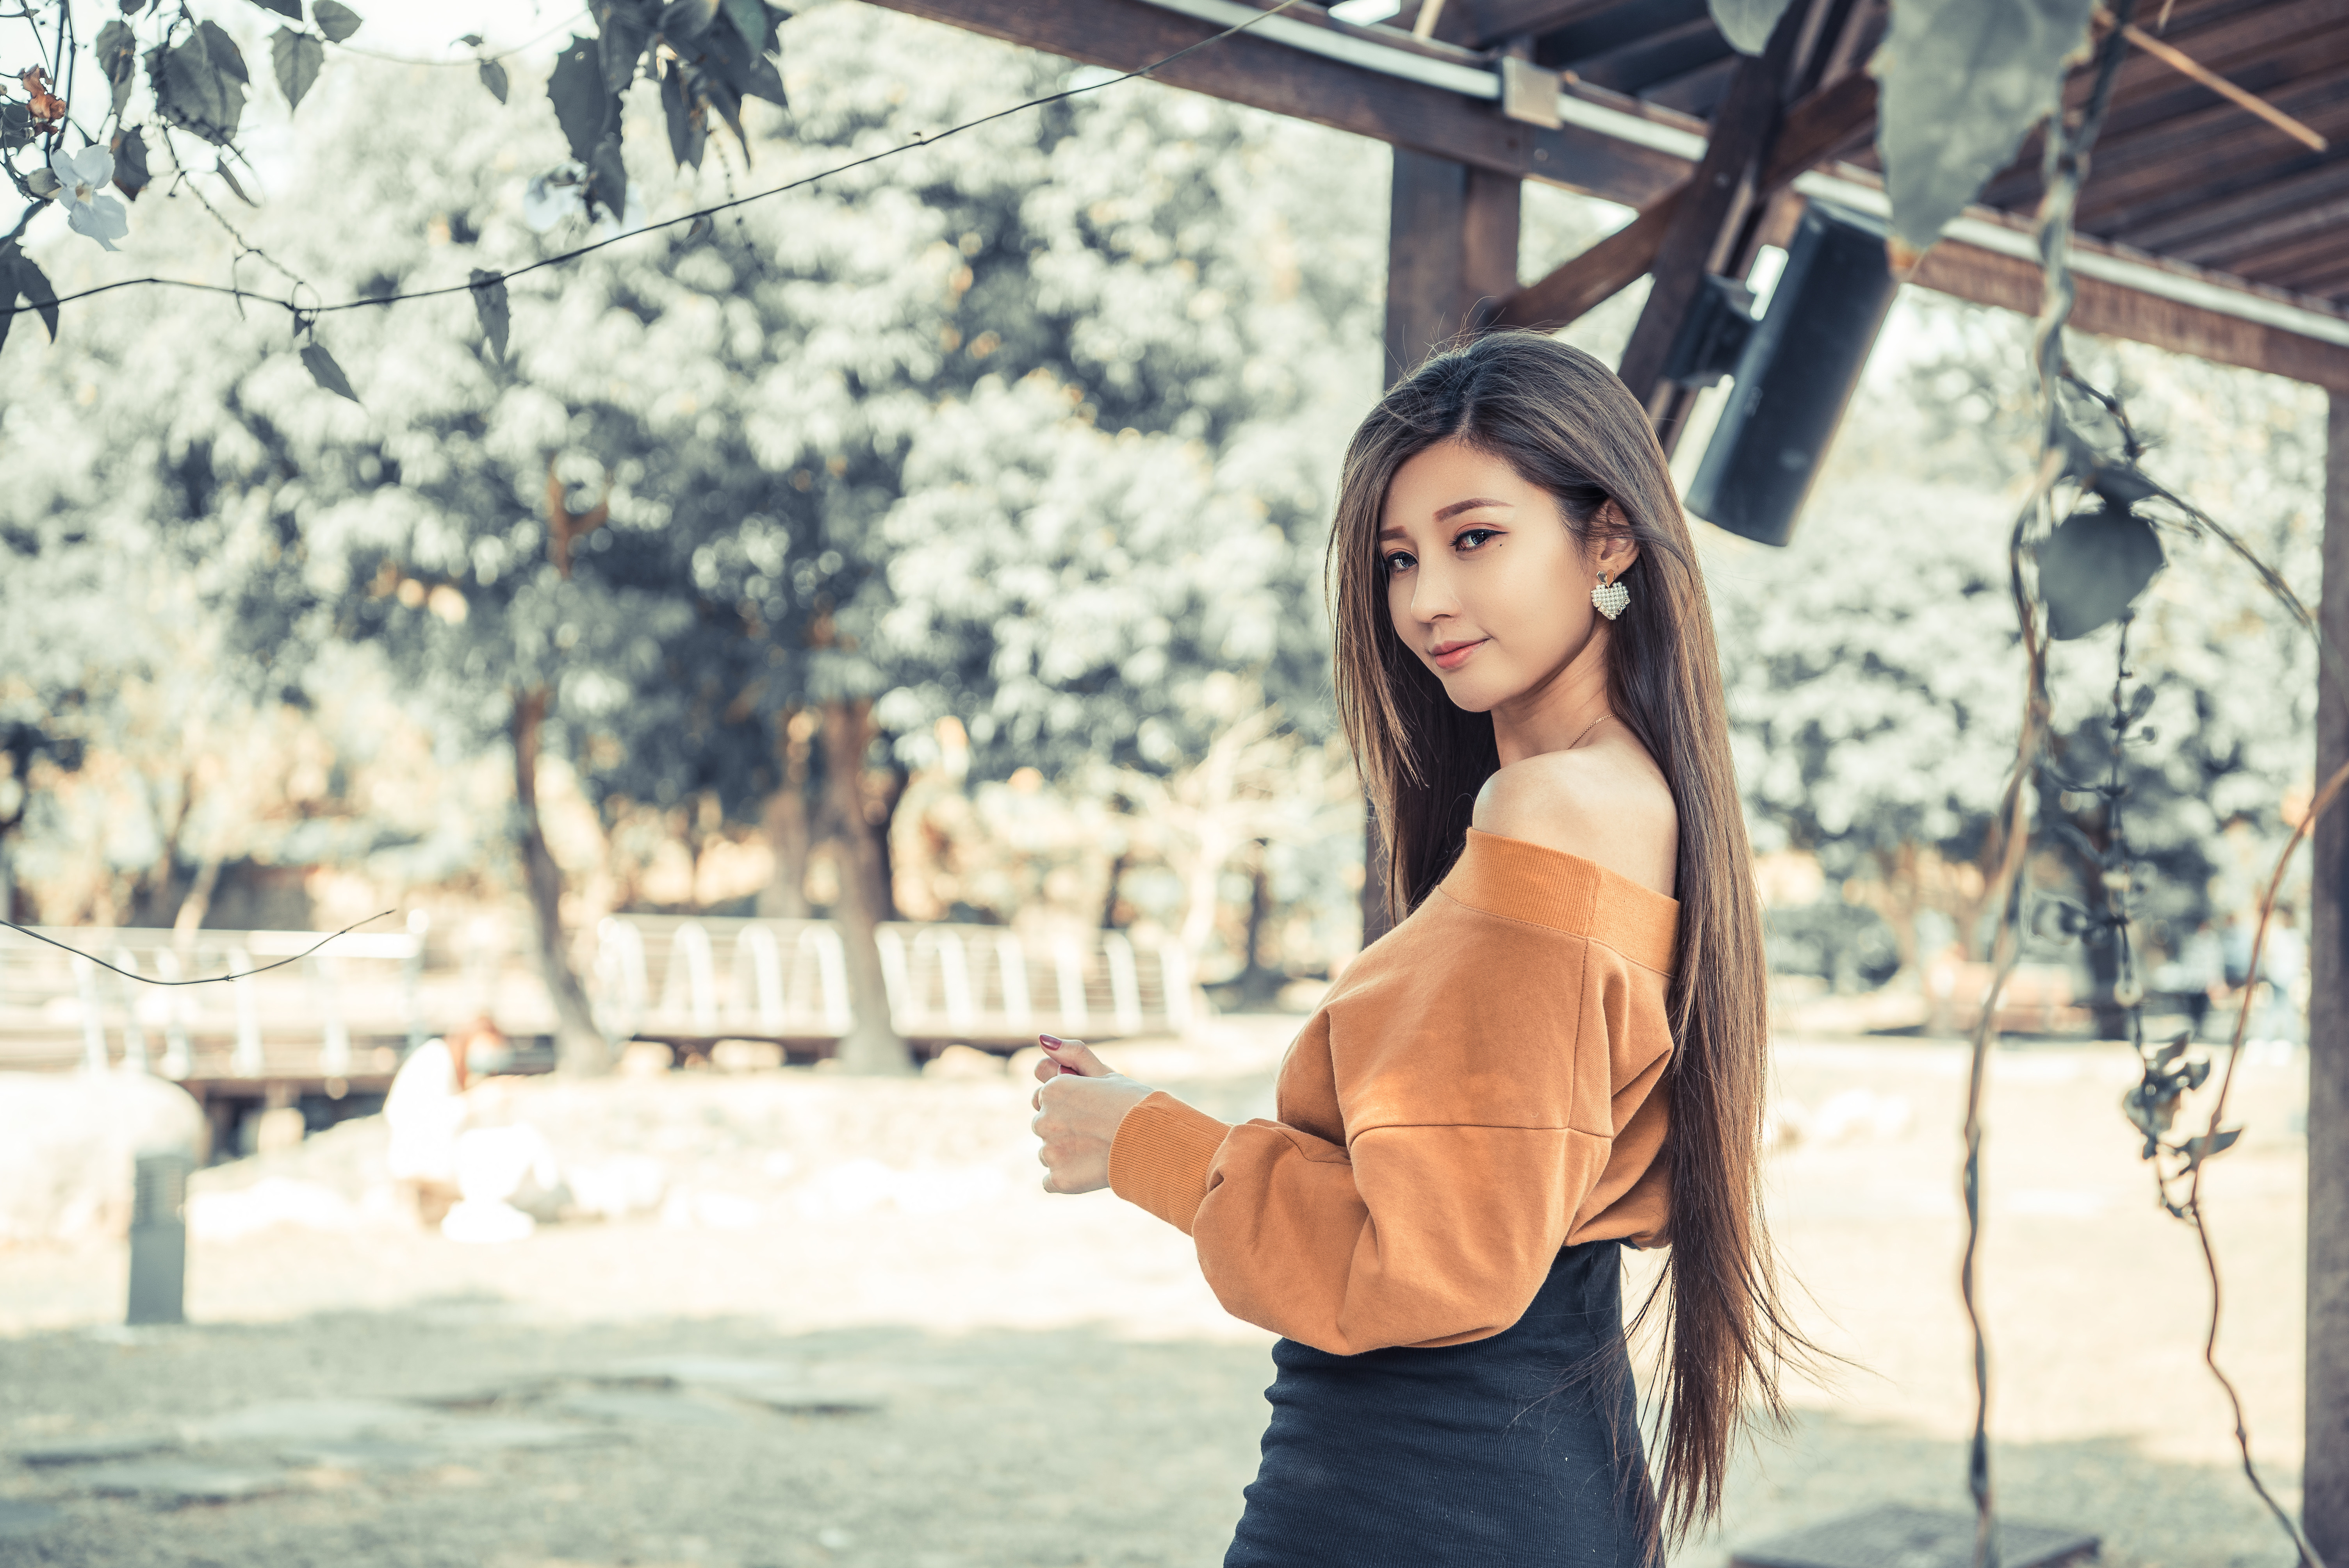 Asian Women Model Long Hair Brunette Pullover Bare Shoulders Earring Speaker Trees Skirt 6016x4016